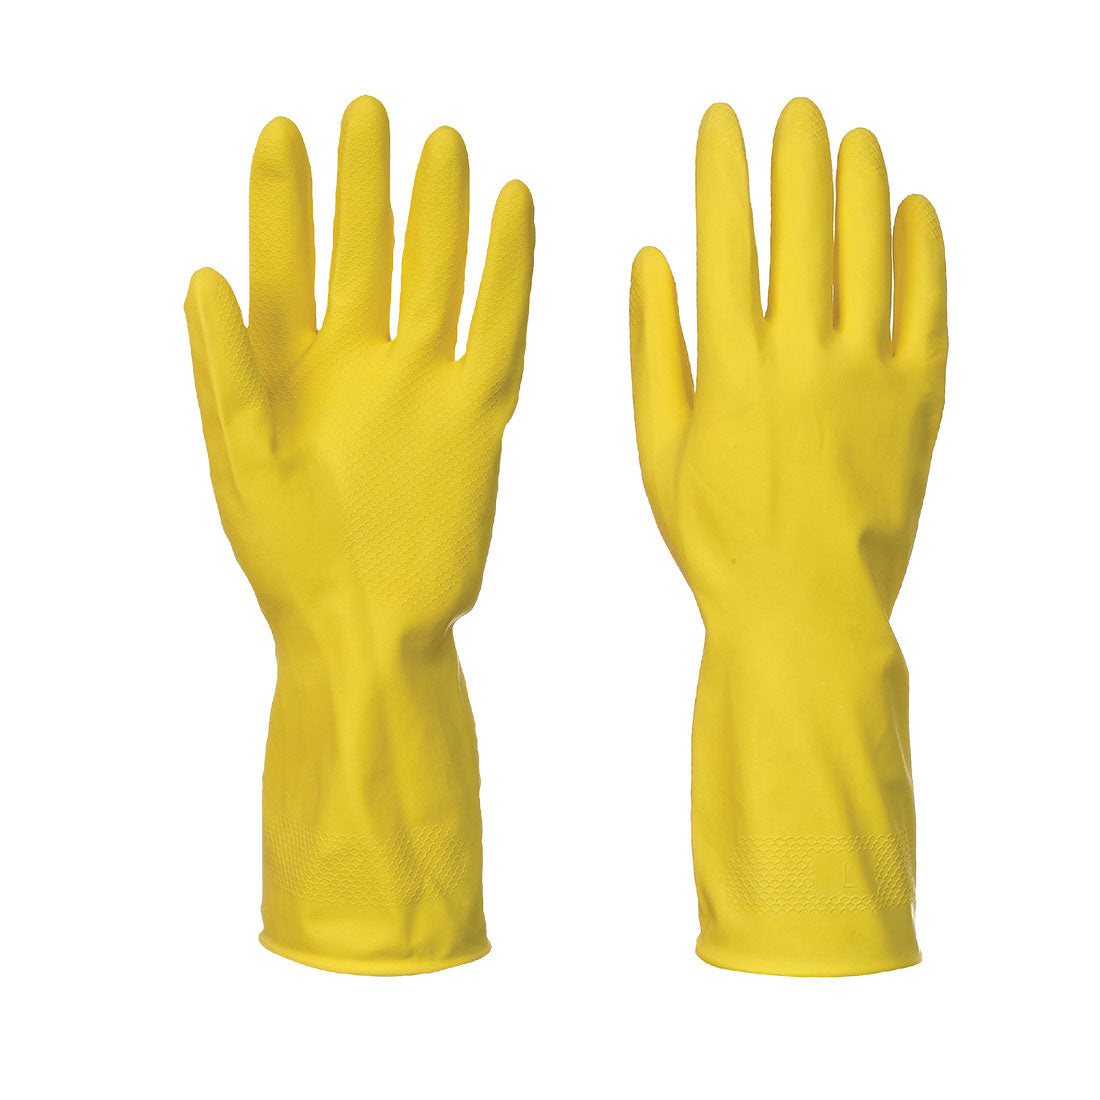 Household Latex Glove (240 Pairs)